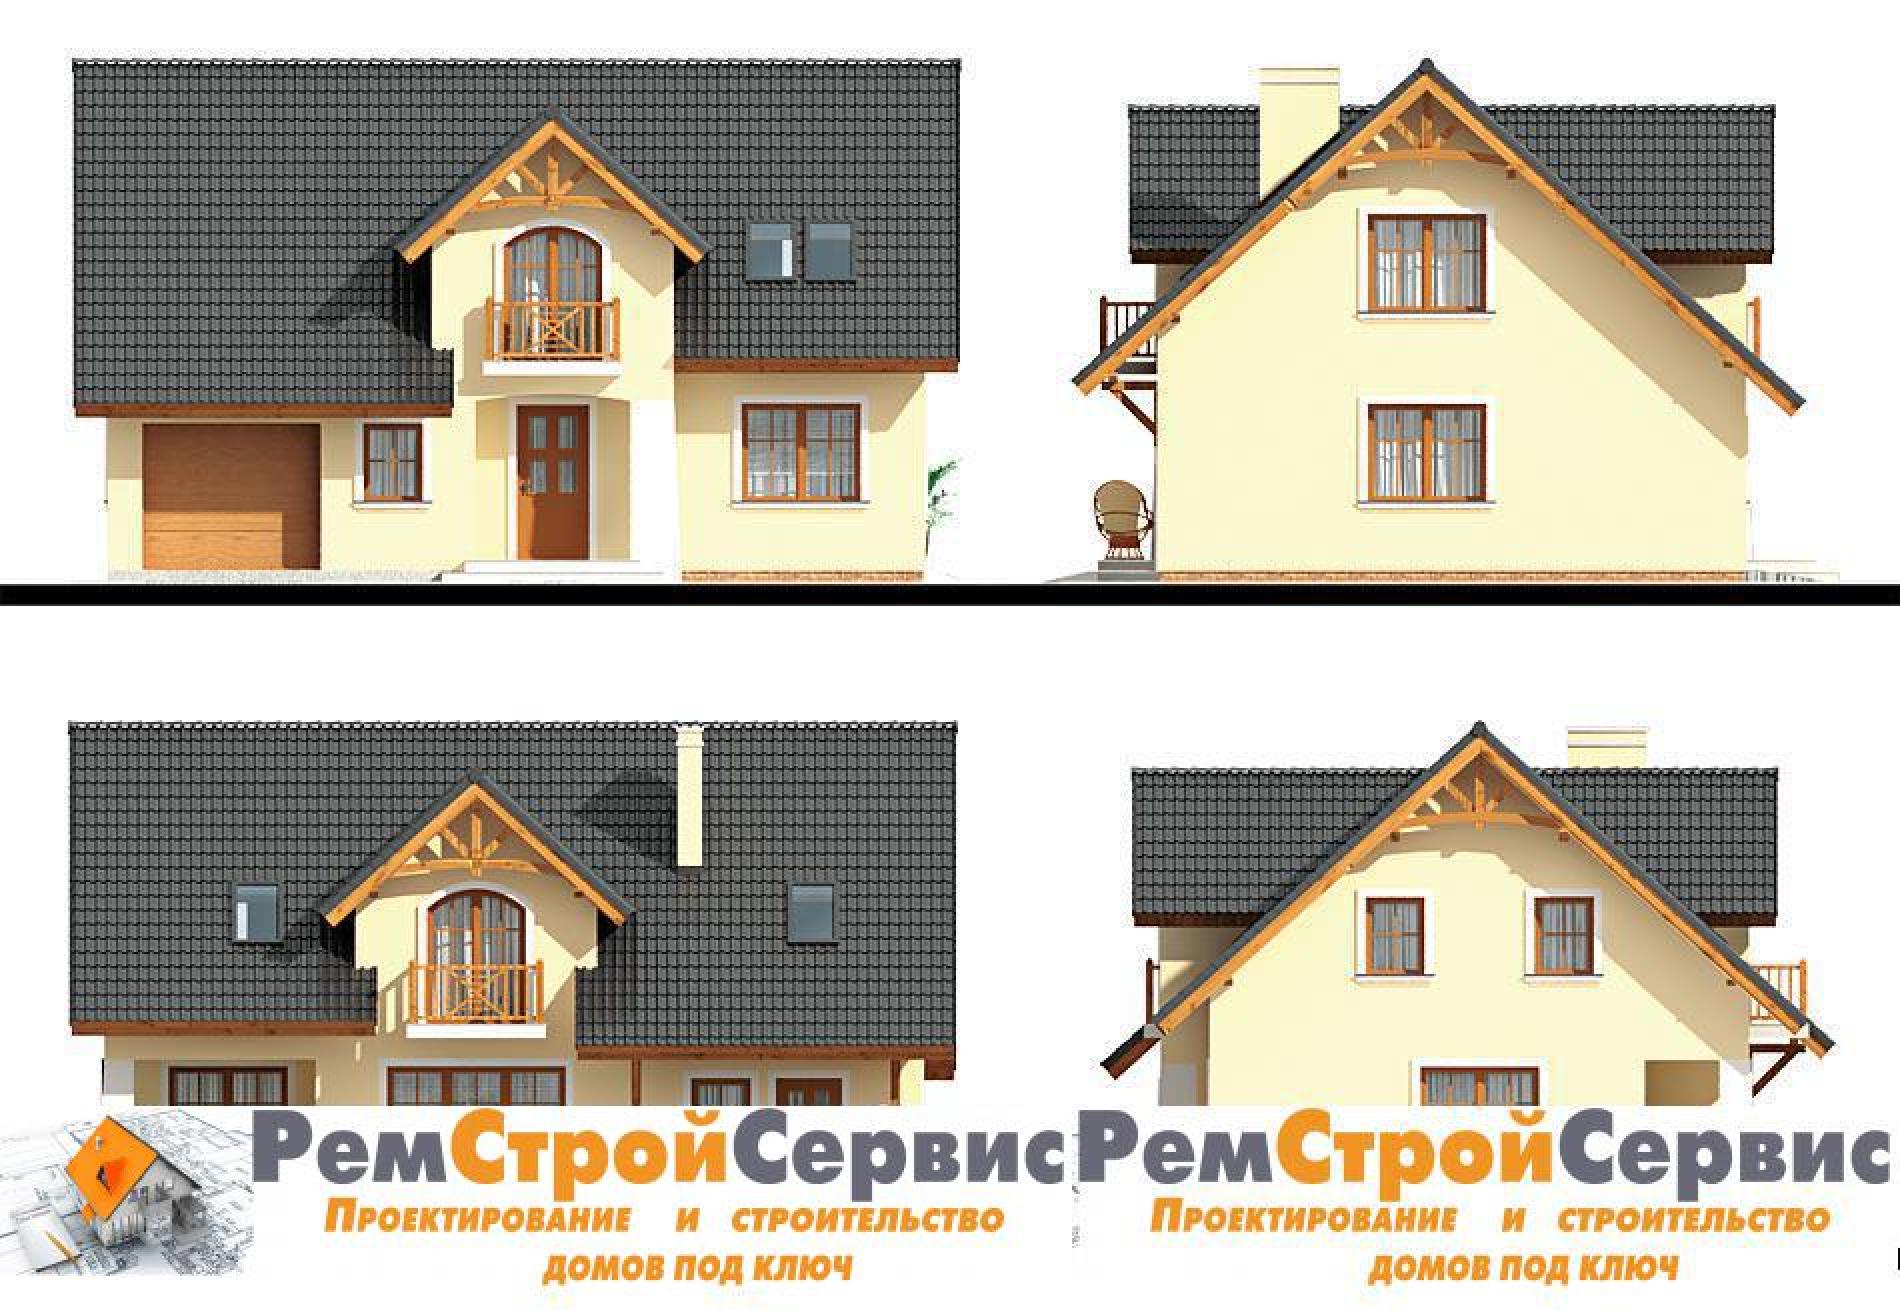 Фасады проекта дома №pl-103 pl-6_f2.jpg